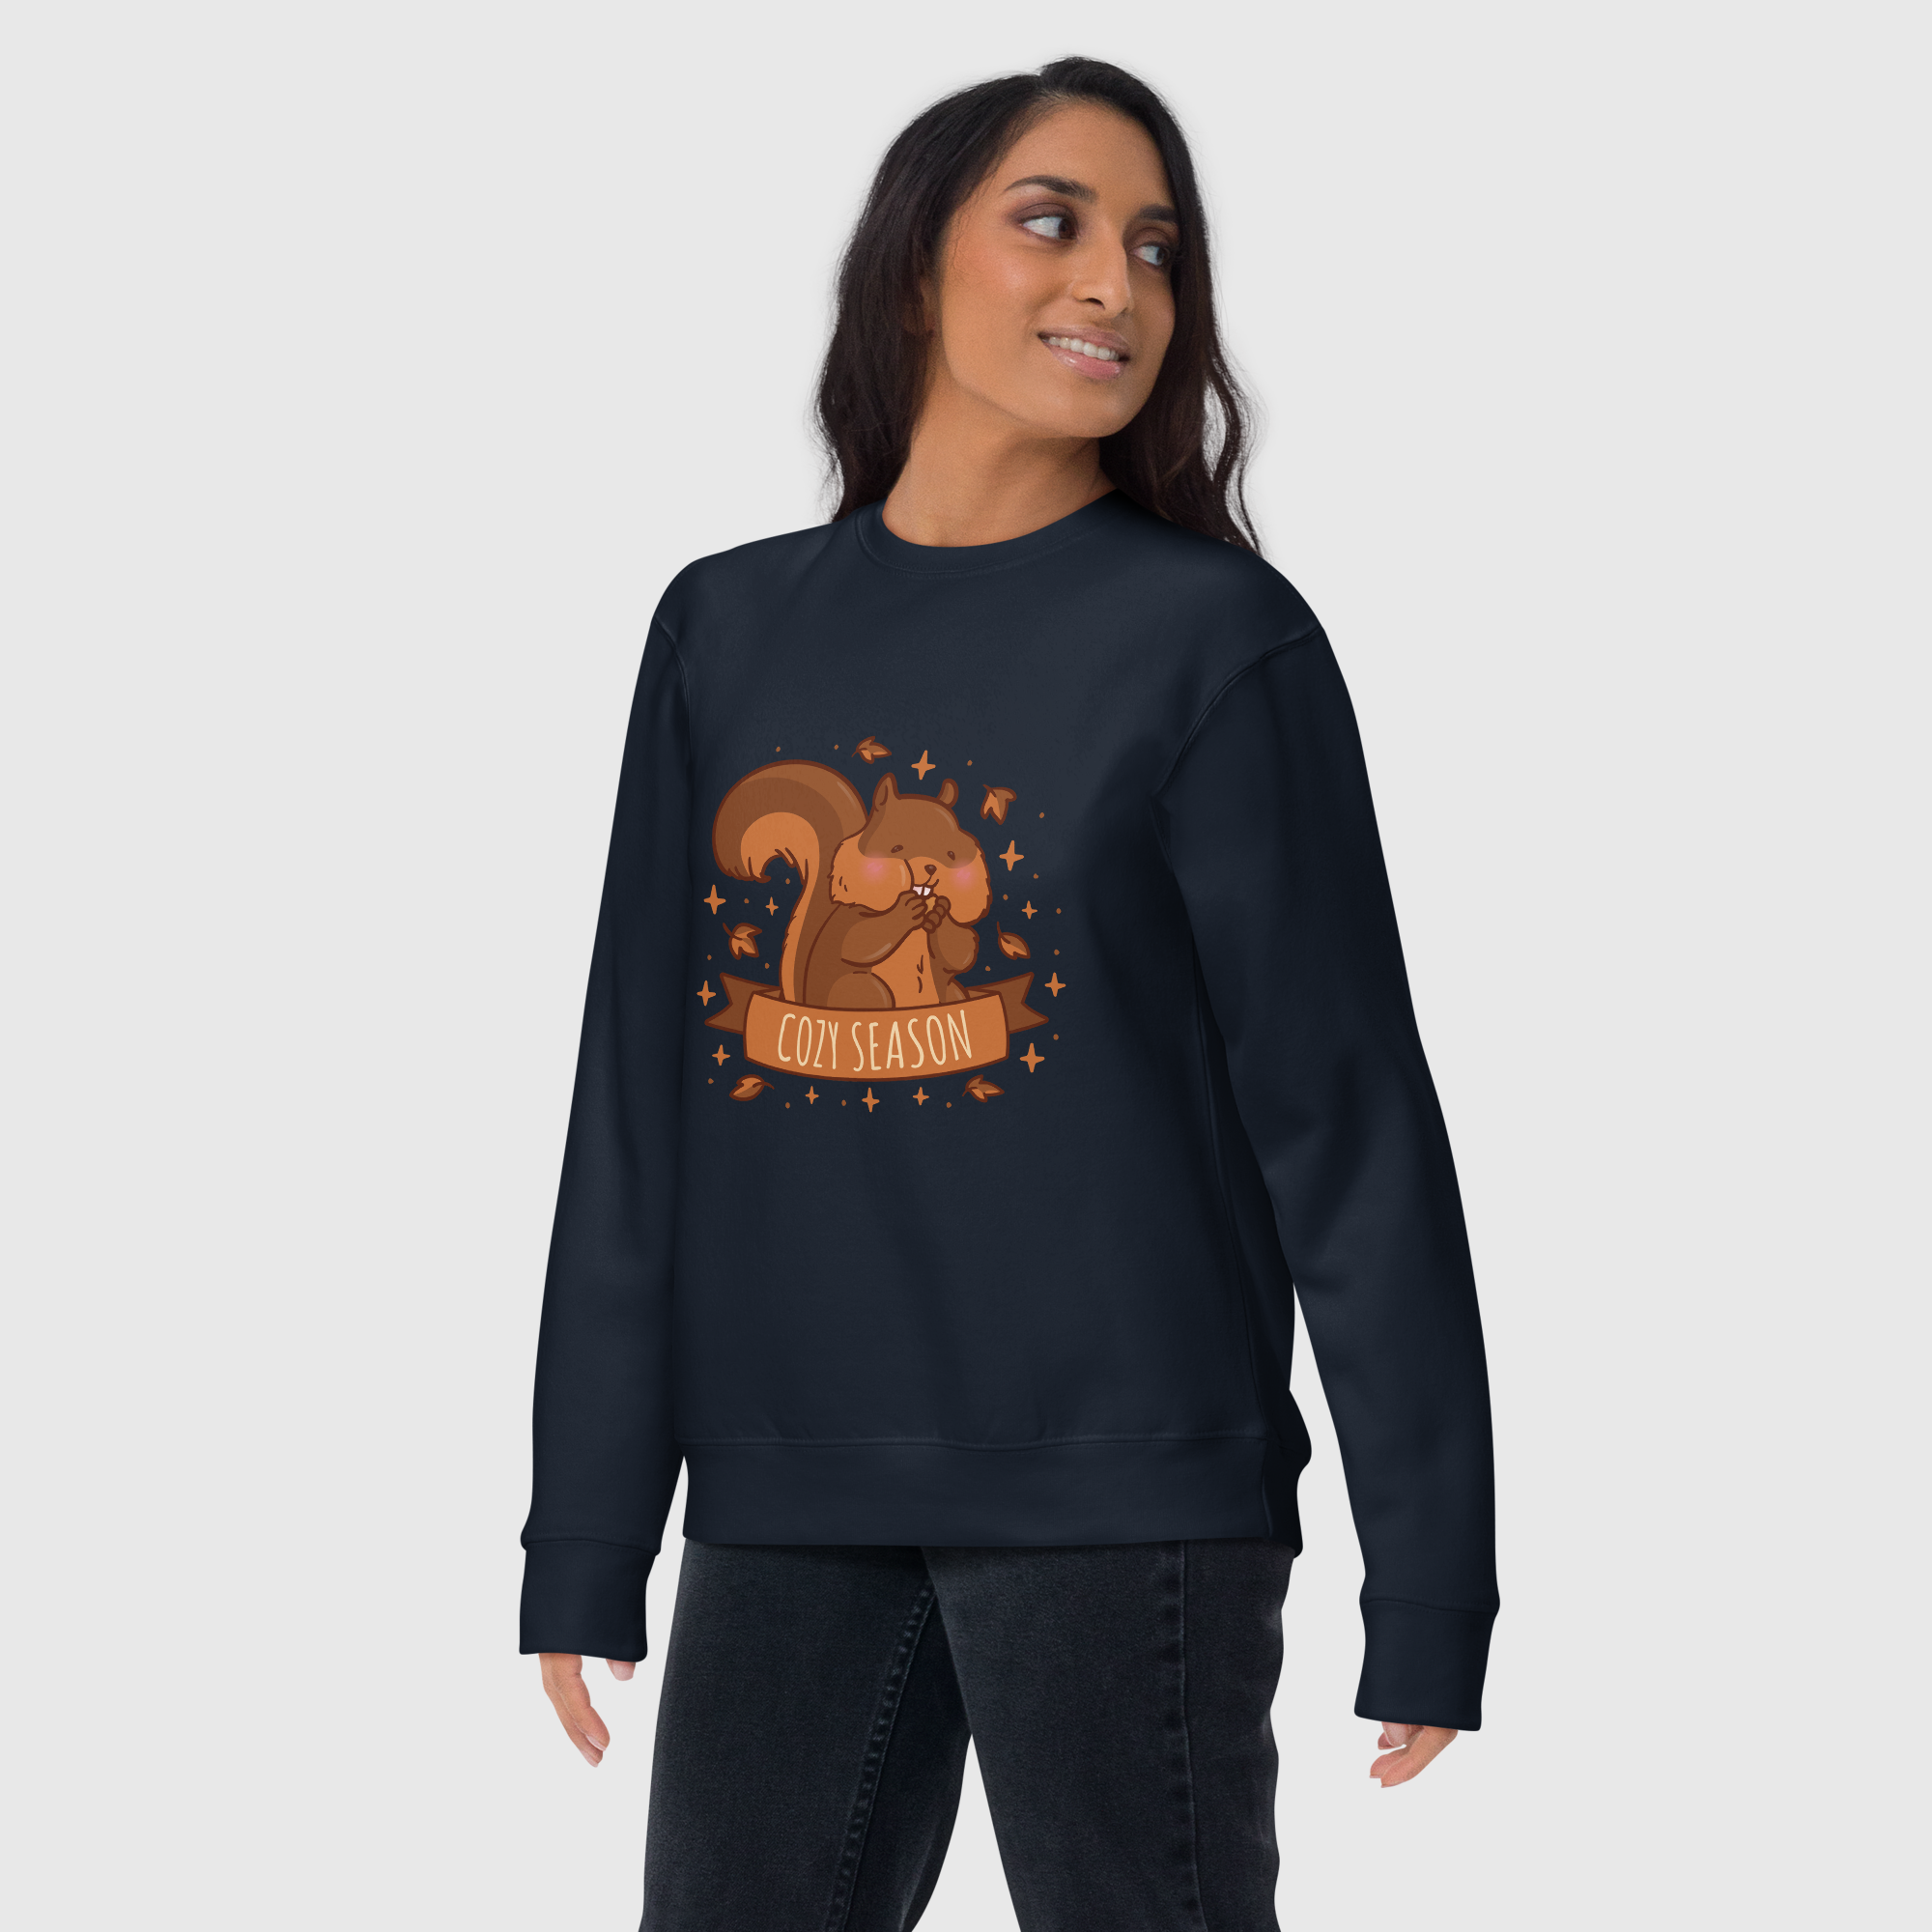 Premium-Sweatshirt für Damen – gemütliche Jahreszeit